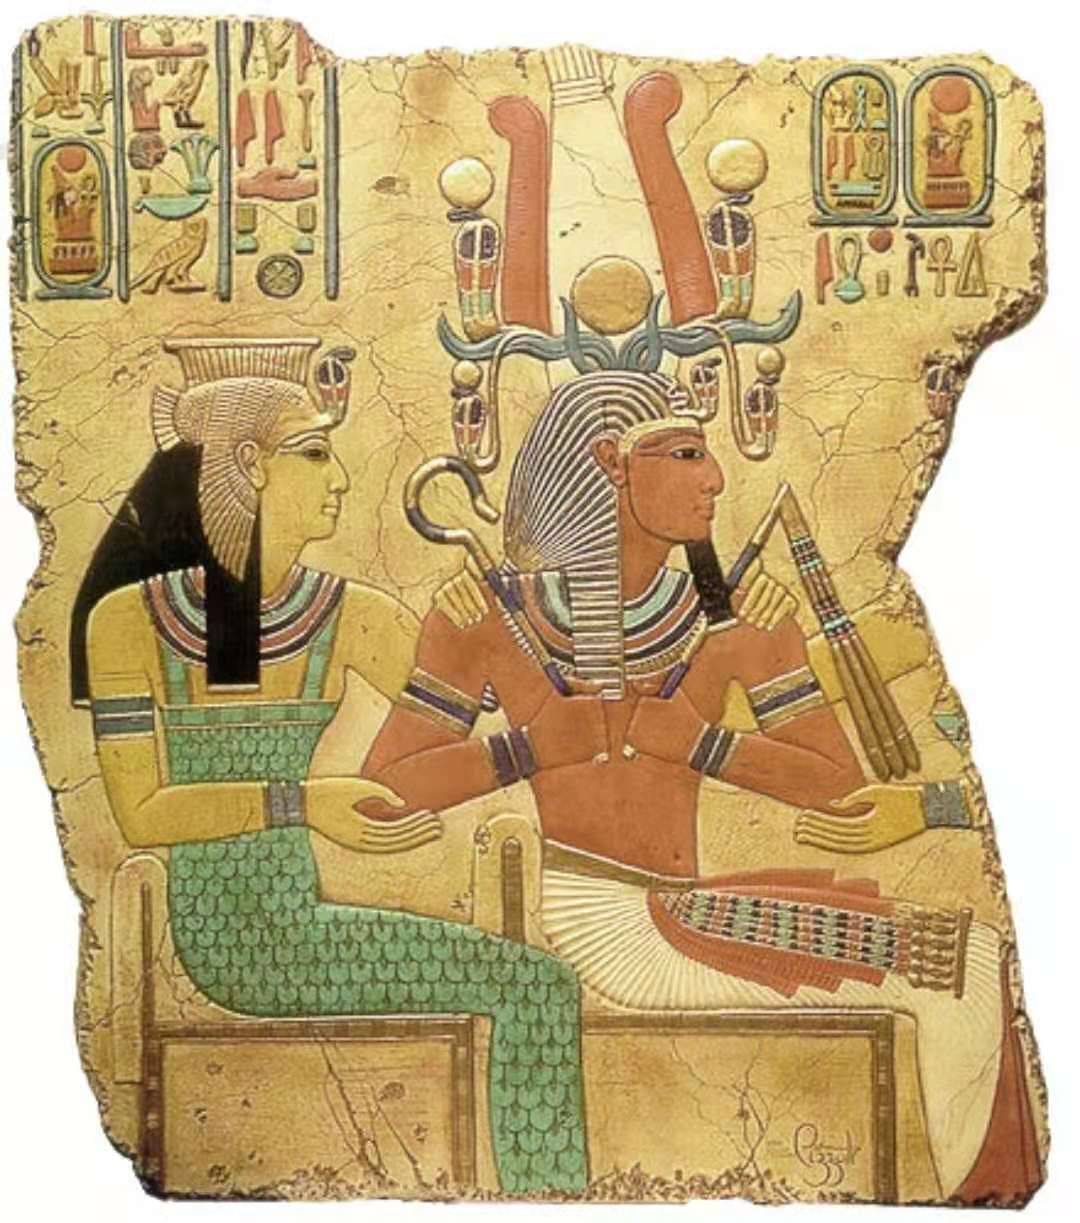 古代埃及人把猫奉为月亮女神的化身和象征,这是因为月亮女神巴斯特